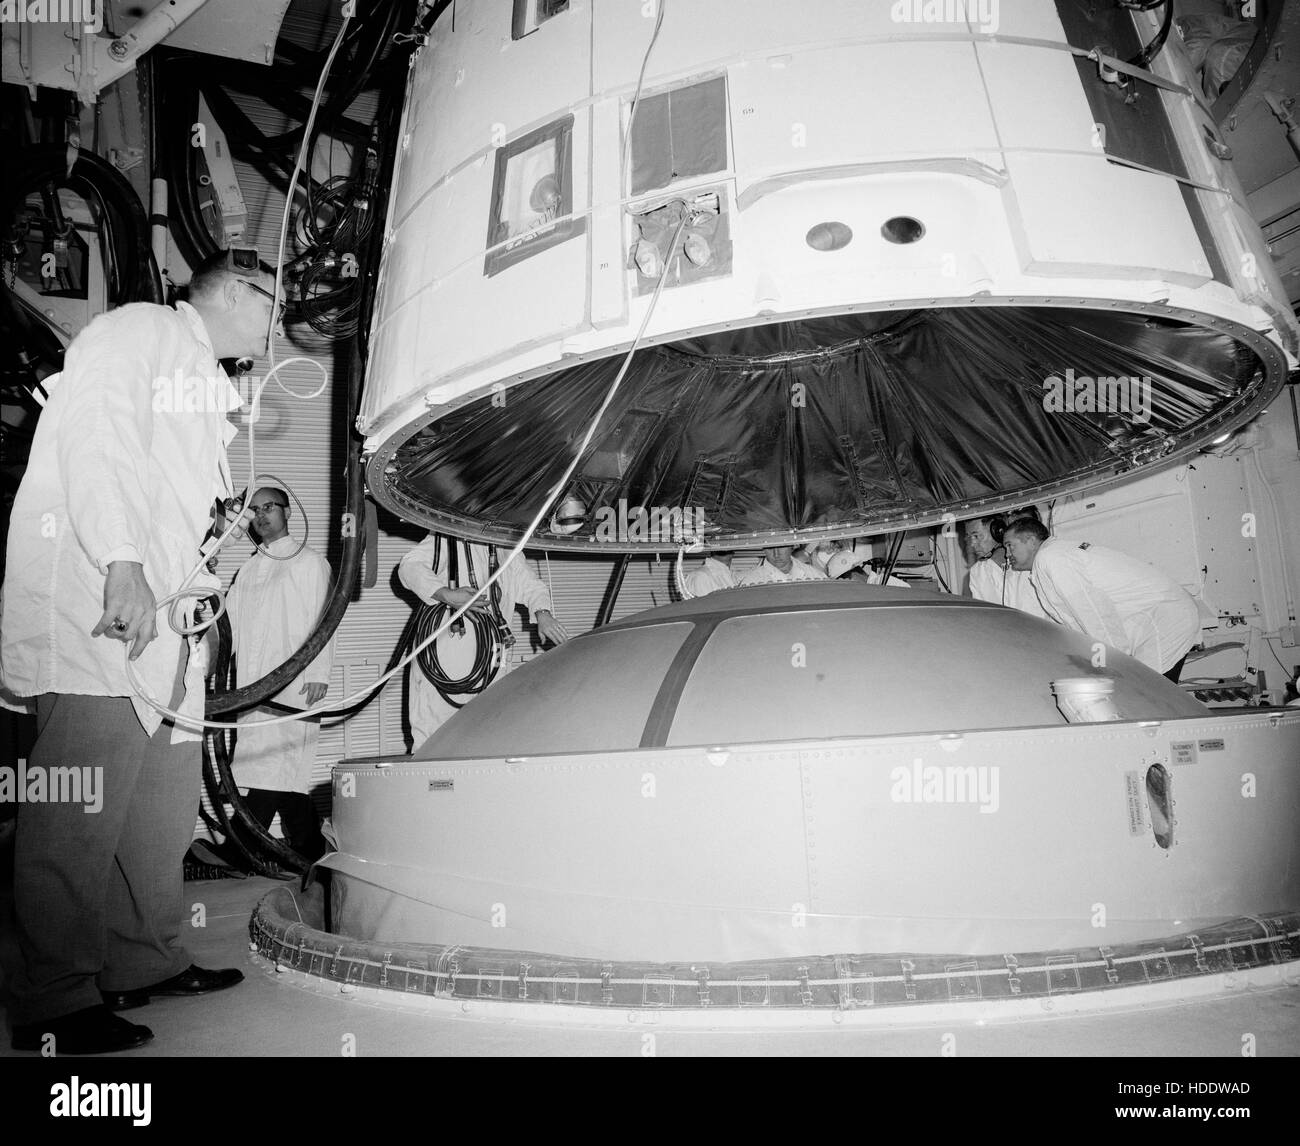 Gli scienziati della NASA si accoppiano il Gemini 3 veicoli spaziali con il Titan II veicolo di lancio presso il Kennedy Space Center di Cape Canaveral Air Force Station Launch Complex 19 stanza bianca Febbraio 1964 a Cape Canaveral, in Florida. Foto Stock